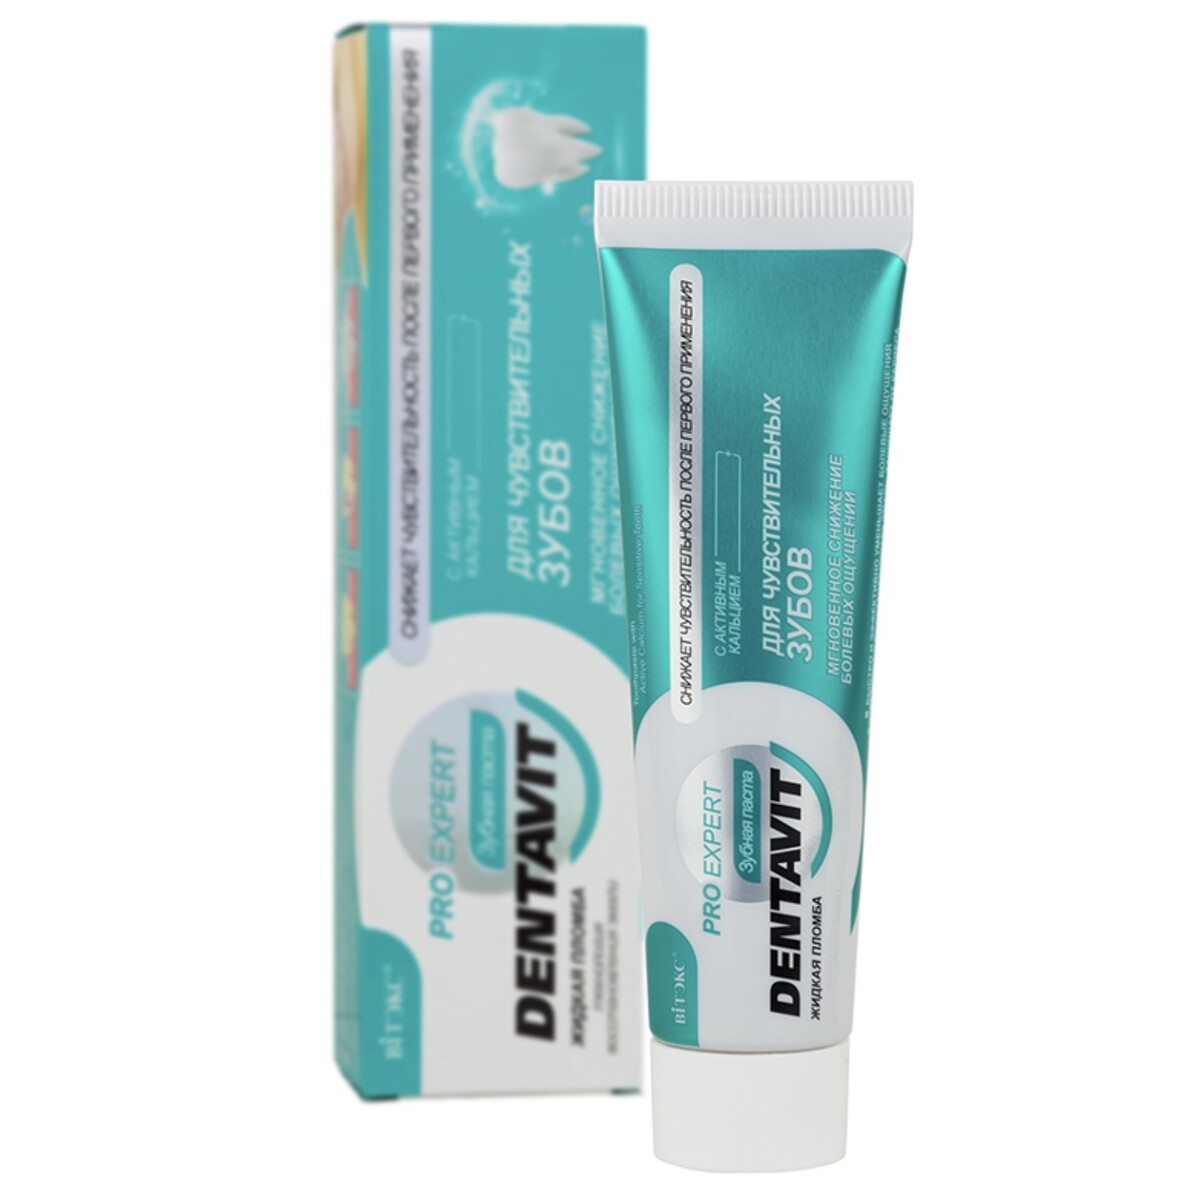 Dentavit pro expert зубная паста для чувствительных зубов с активным кальцием, 85 г.+ коробка лакалют паста зубная анти кариес 50мл